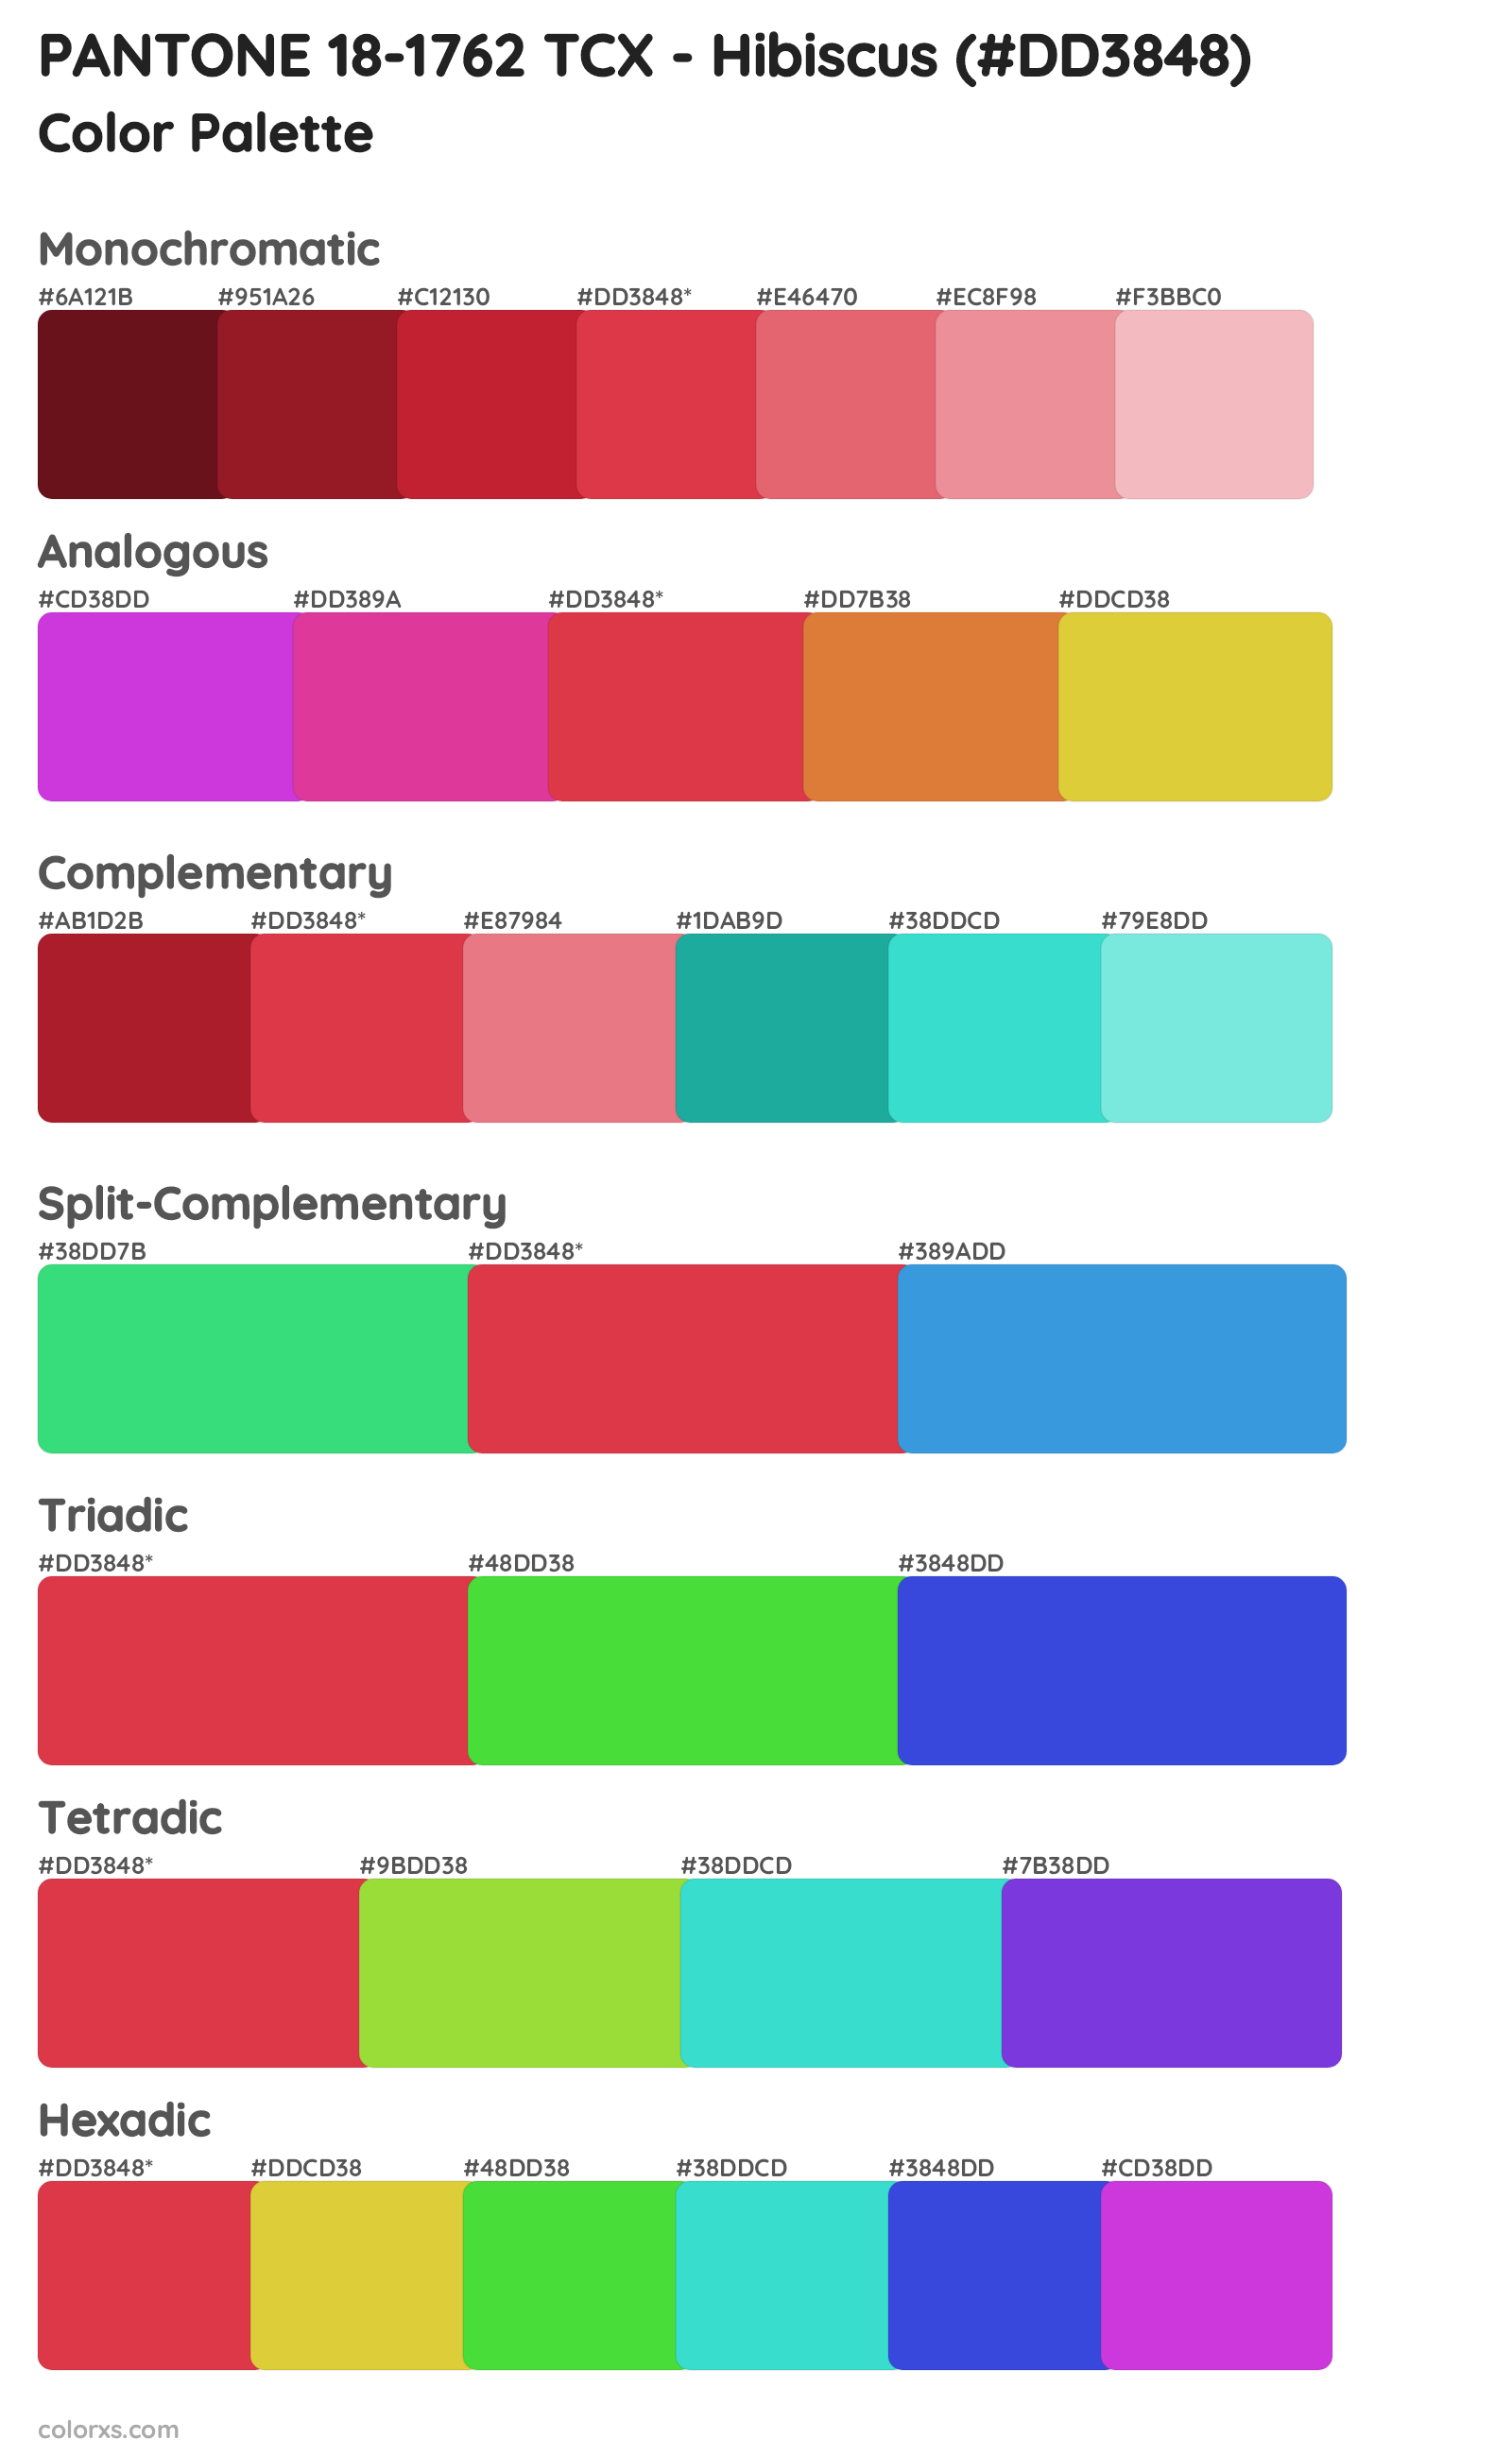 PANTONE 18-1762 TCX - Hibiscus Color Scheme Palettes